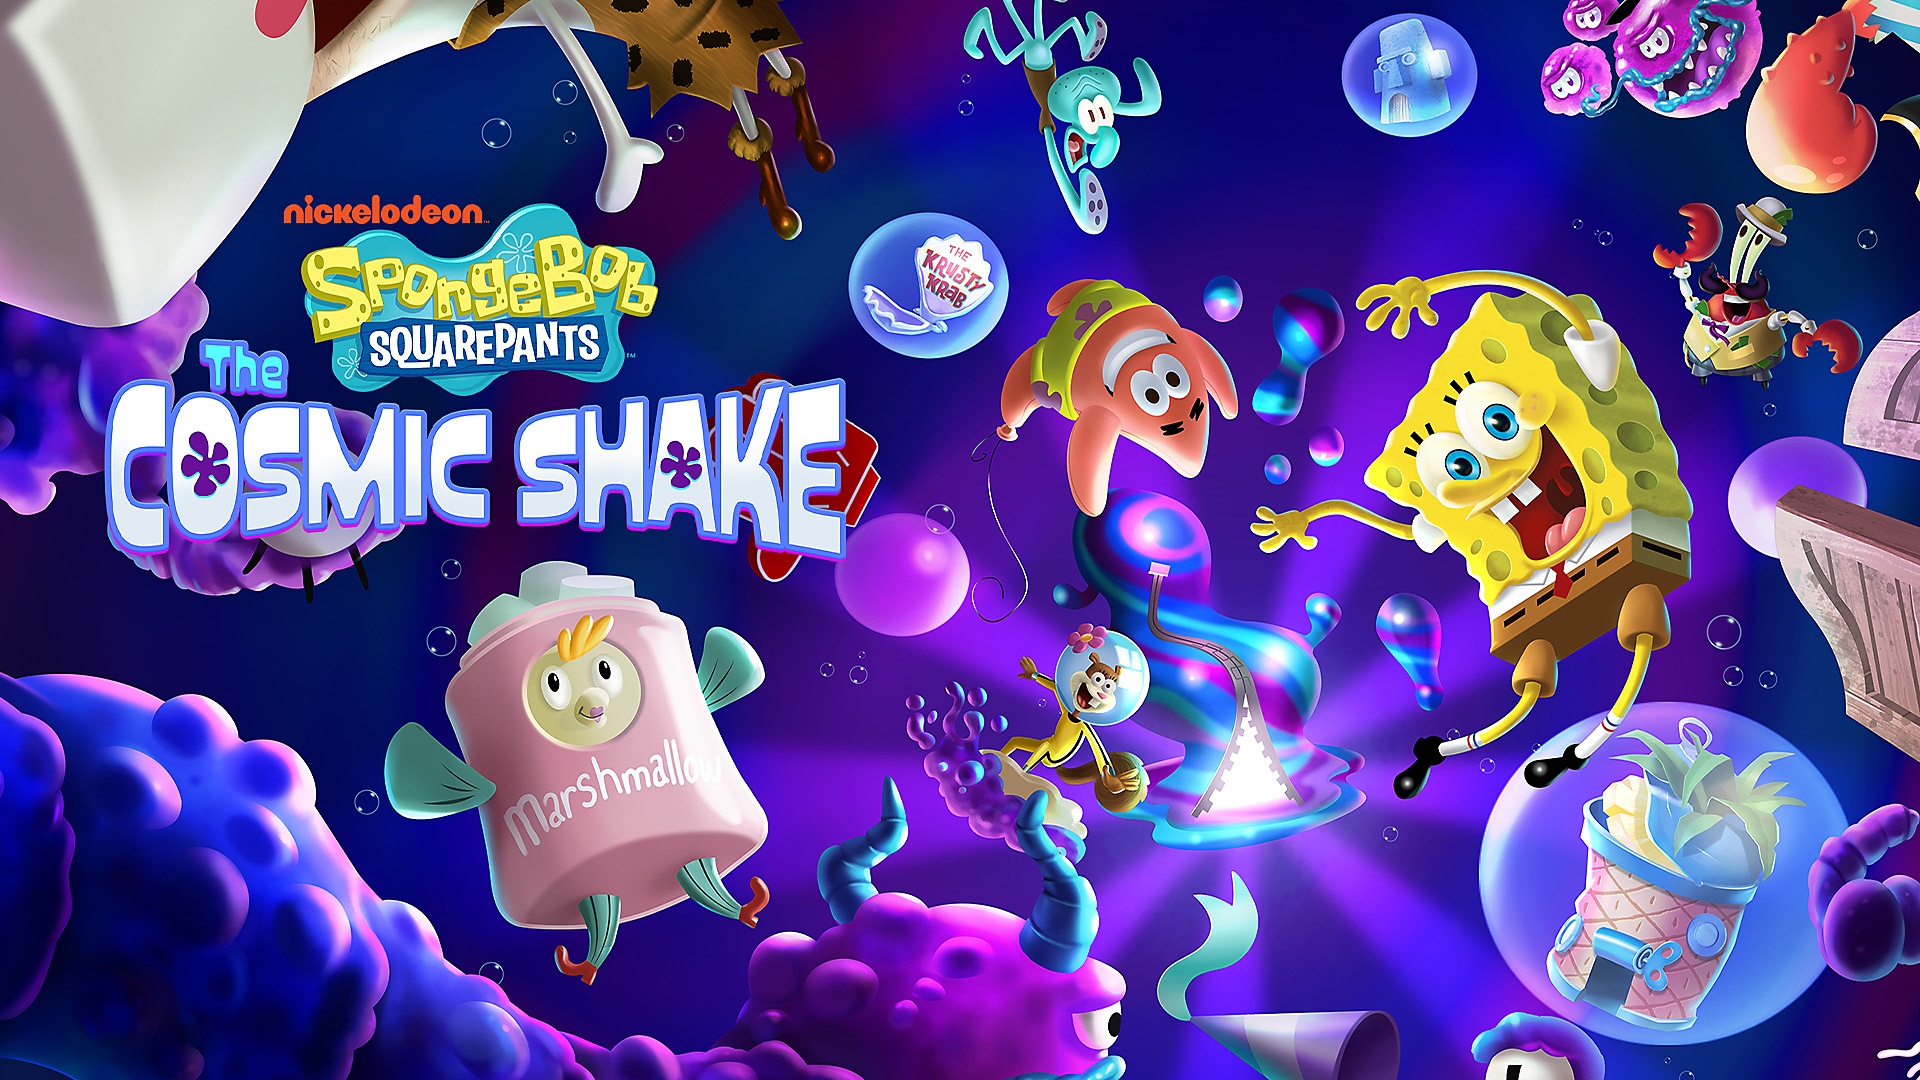 Bob Esponja, Patricio y otros personajes flotando bajo el cosmos submarino de SpongeBob SquarePants: The Cosmic Shake en PS4 y PS5